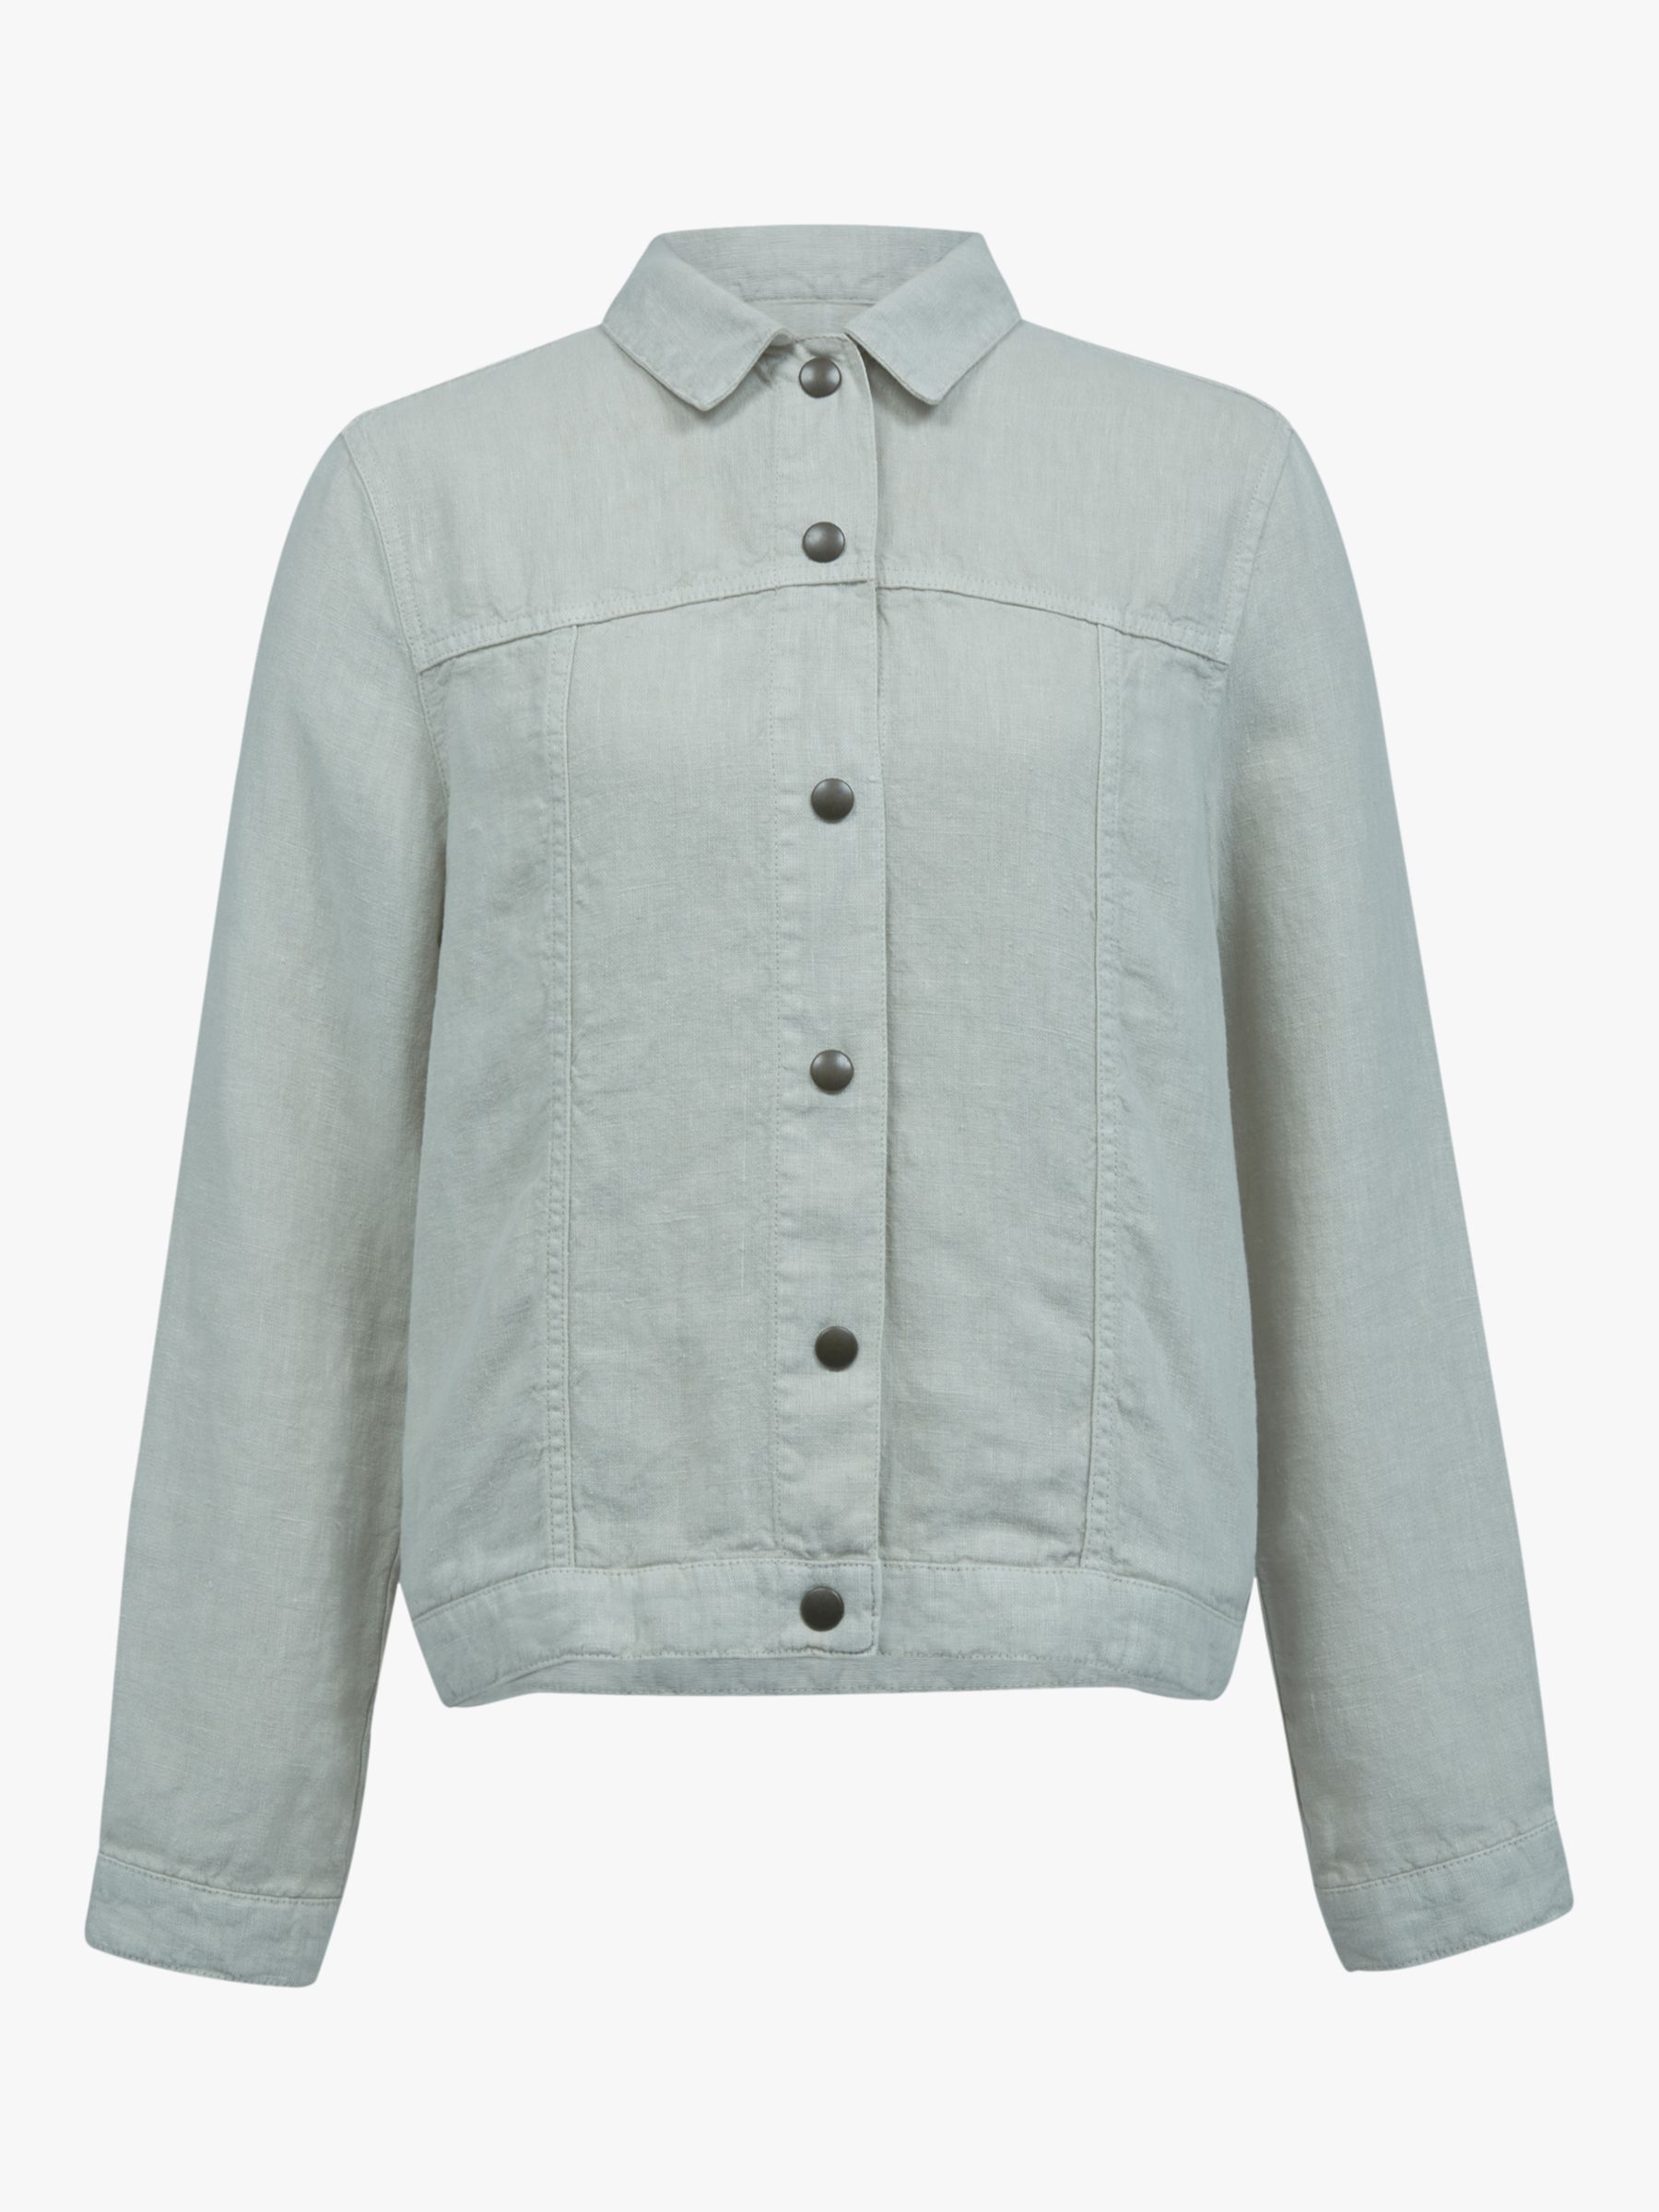 Celtic & Co. Western Linen Jacket, Stone, 16